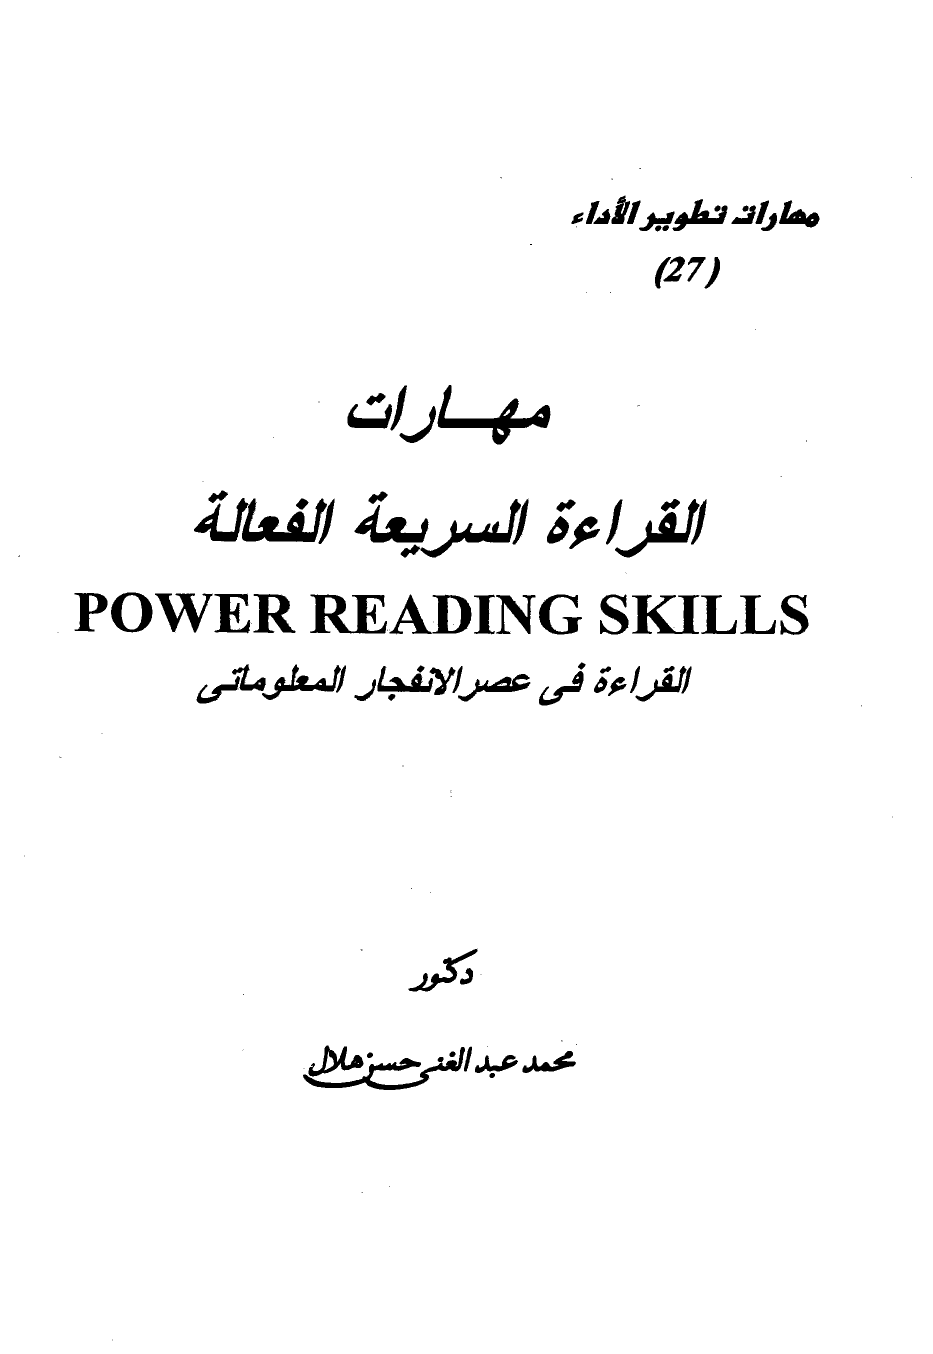 تنزيل وتحميل كتاِب مهارات القراءة السريعة الفعالة القراءة في عصر الإنفجار المعلوماتي pdf برابط مباشر مجاناً 